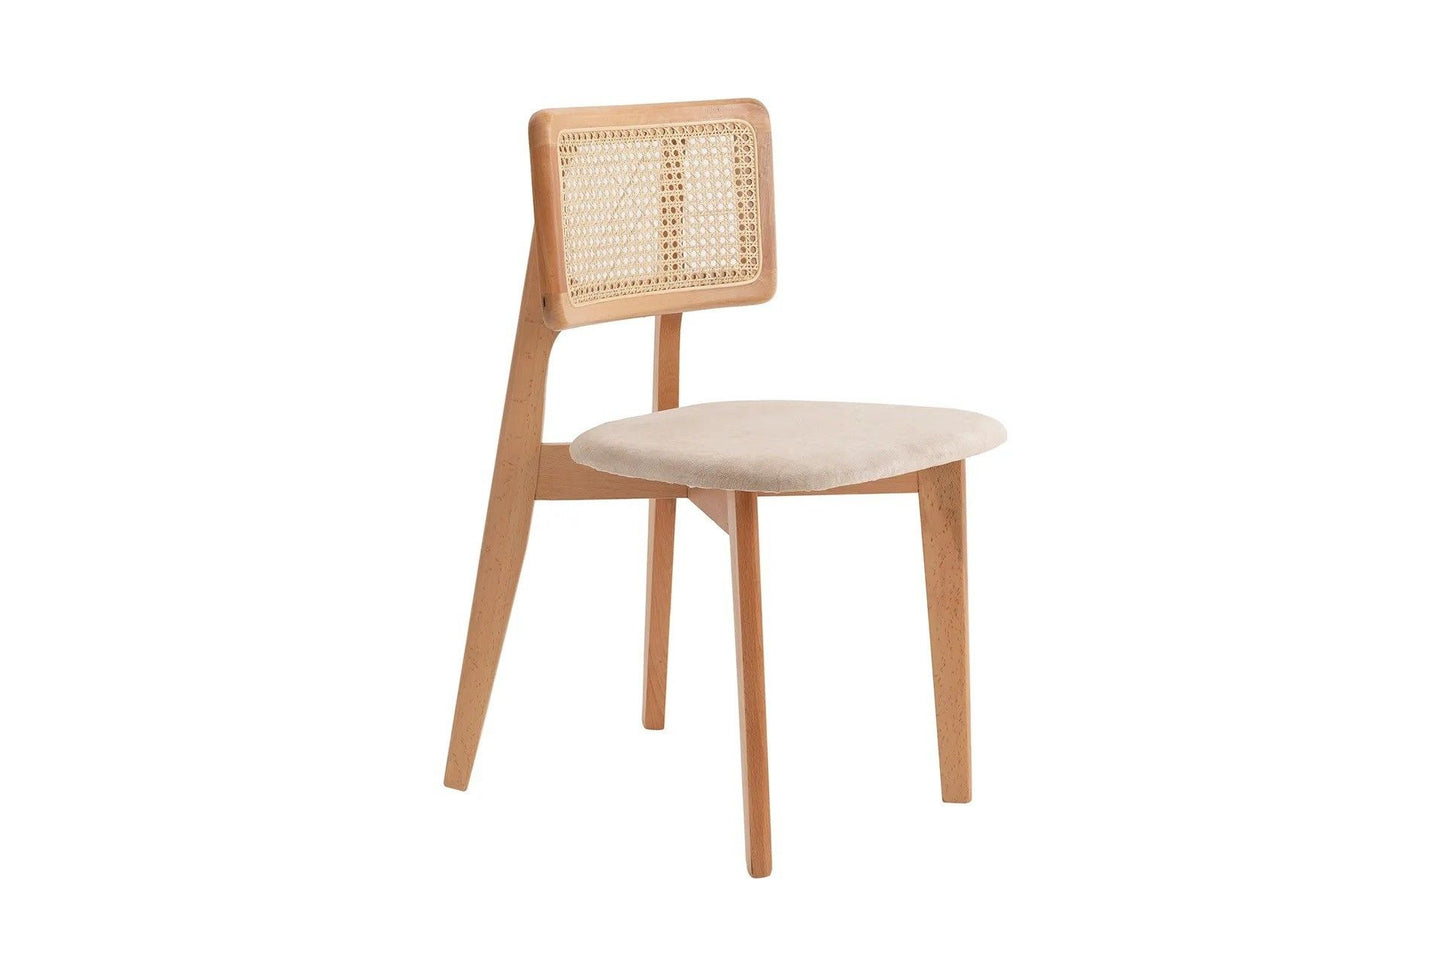 Zeus 45 Set - Oak - Chair Set (2 Pieces)